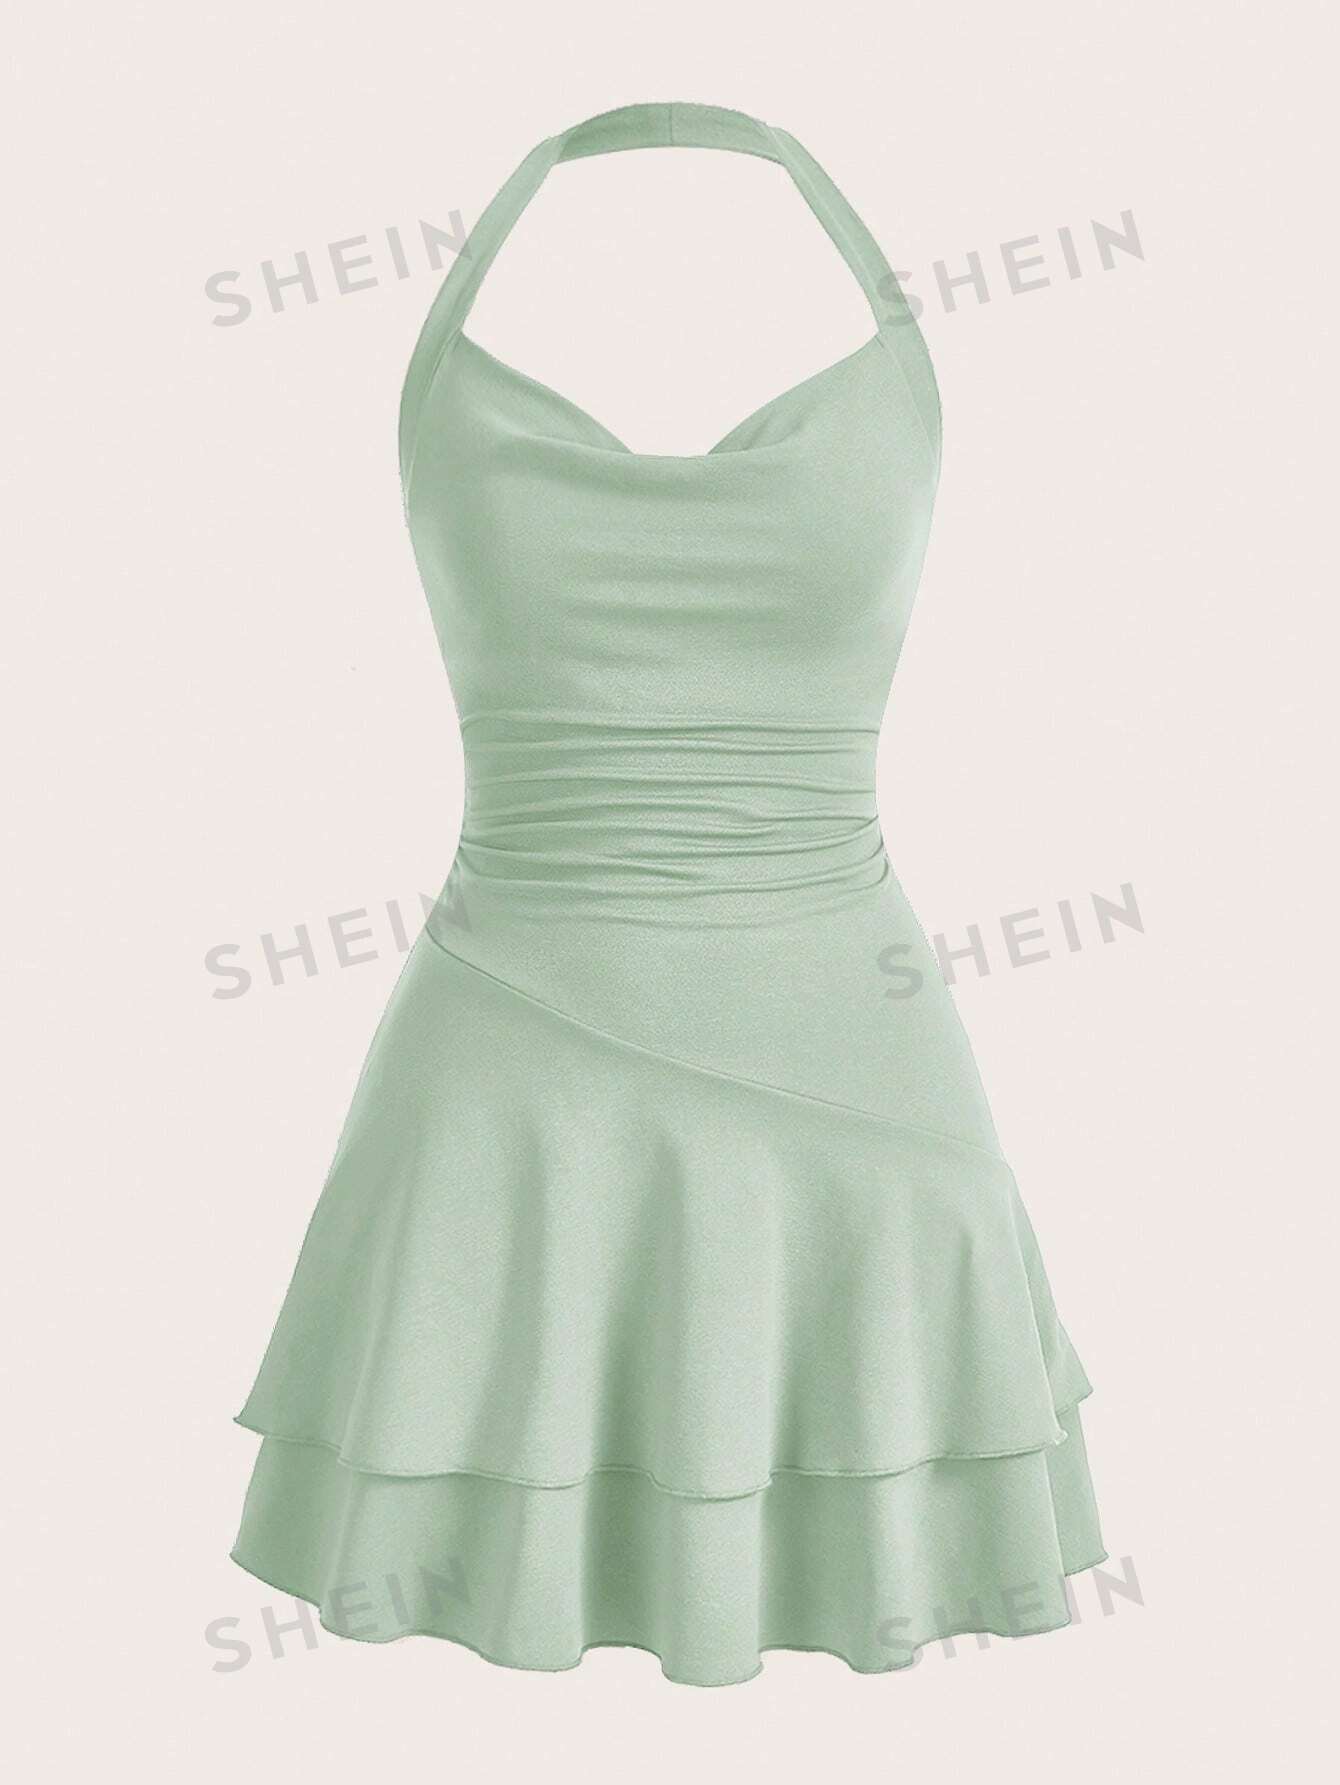 SHEIN MOD однотонное женское платье с бретелькой на шее и многослойным подолом, мятно-зеленый